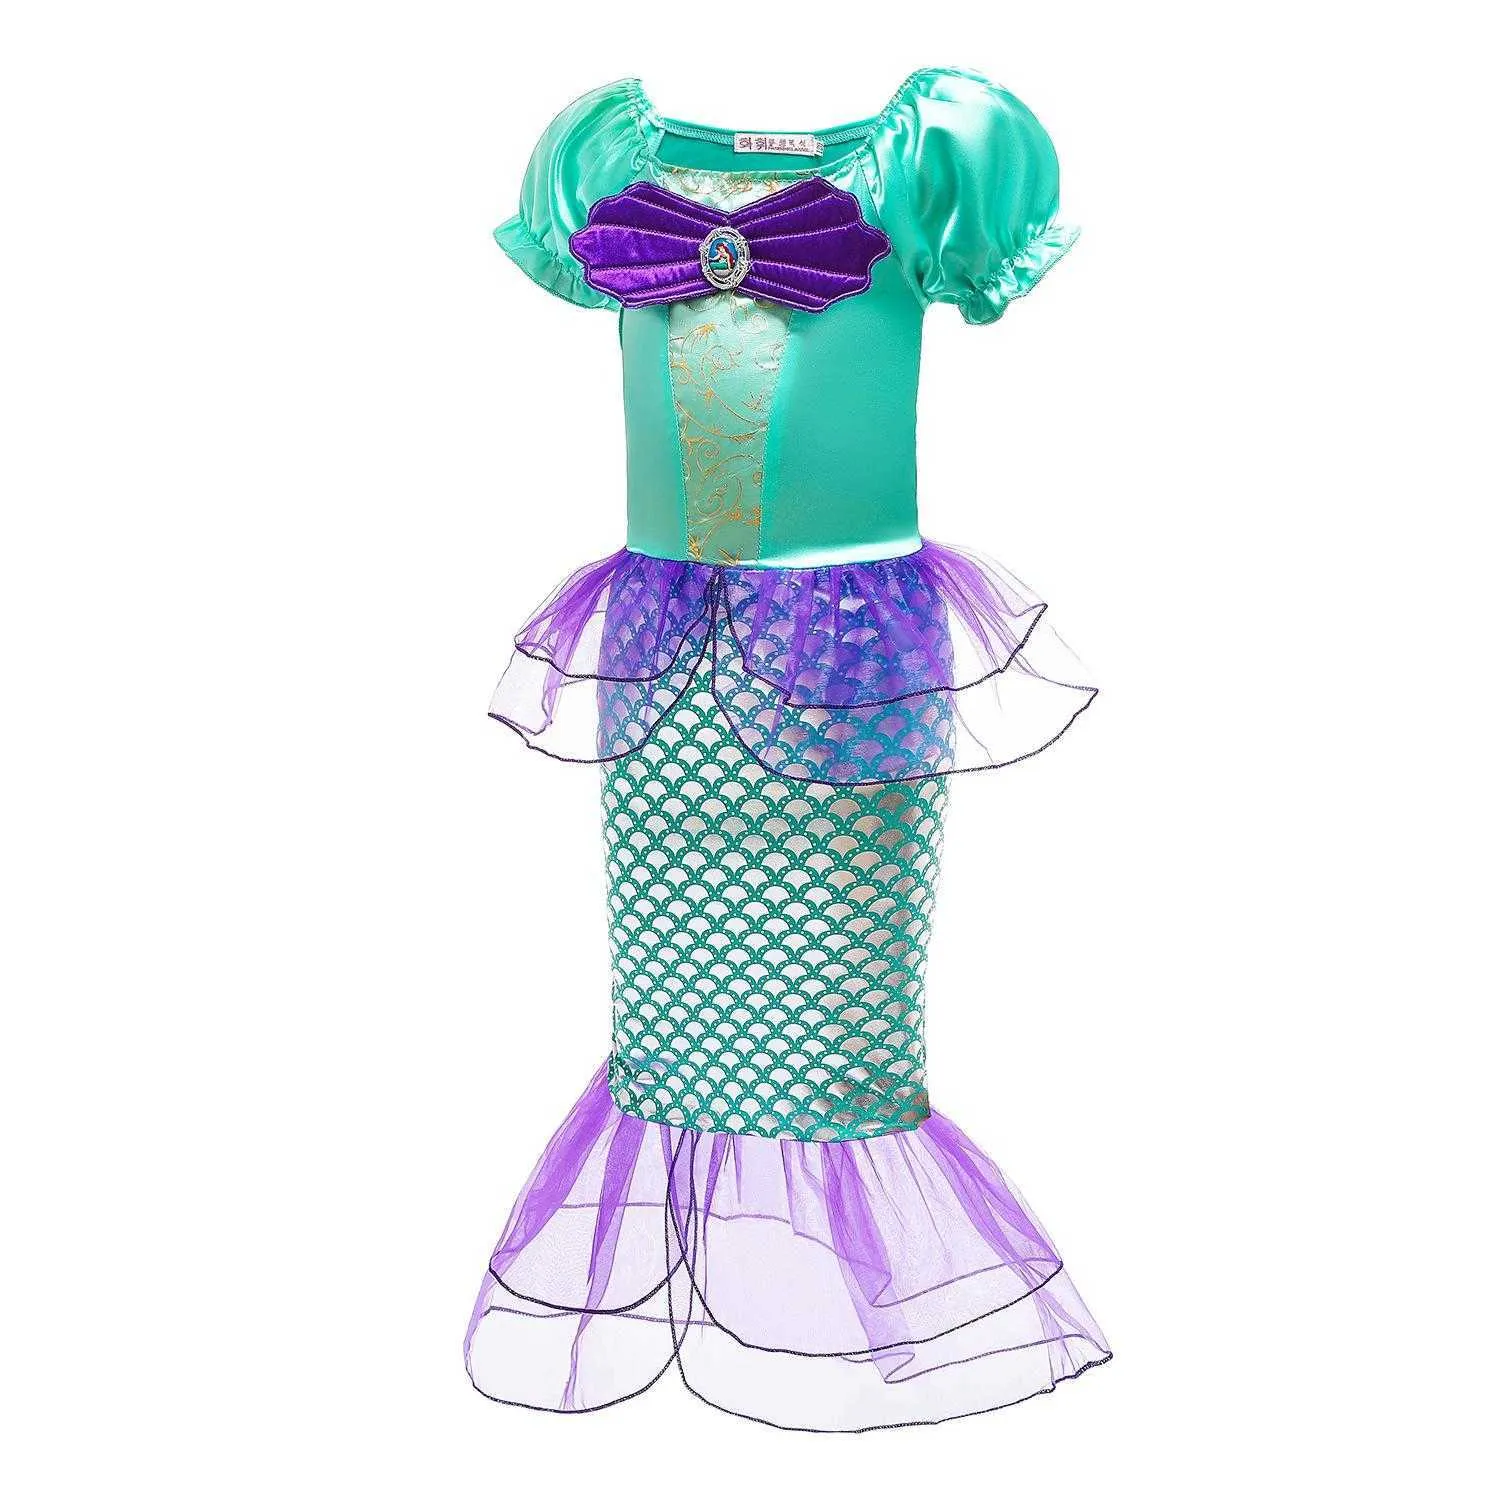 Küçük Mermaid Kız Prenses Ariel Elbise Çocuklar Cadılar Bayramı Fantezi Kostüm Çocuk Karnaval Doğum Günü Partisi Giysileri Yaz Giydir G1026